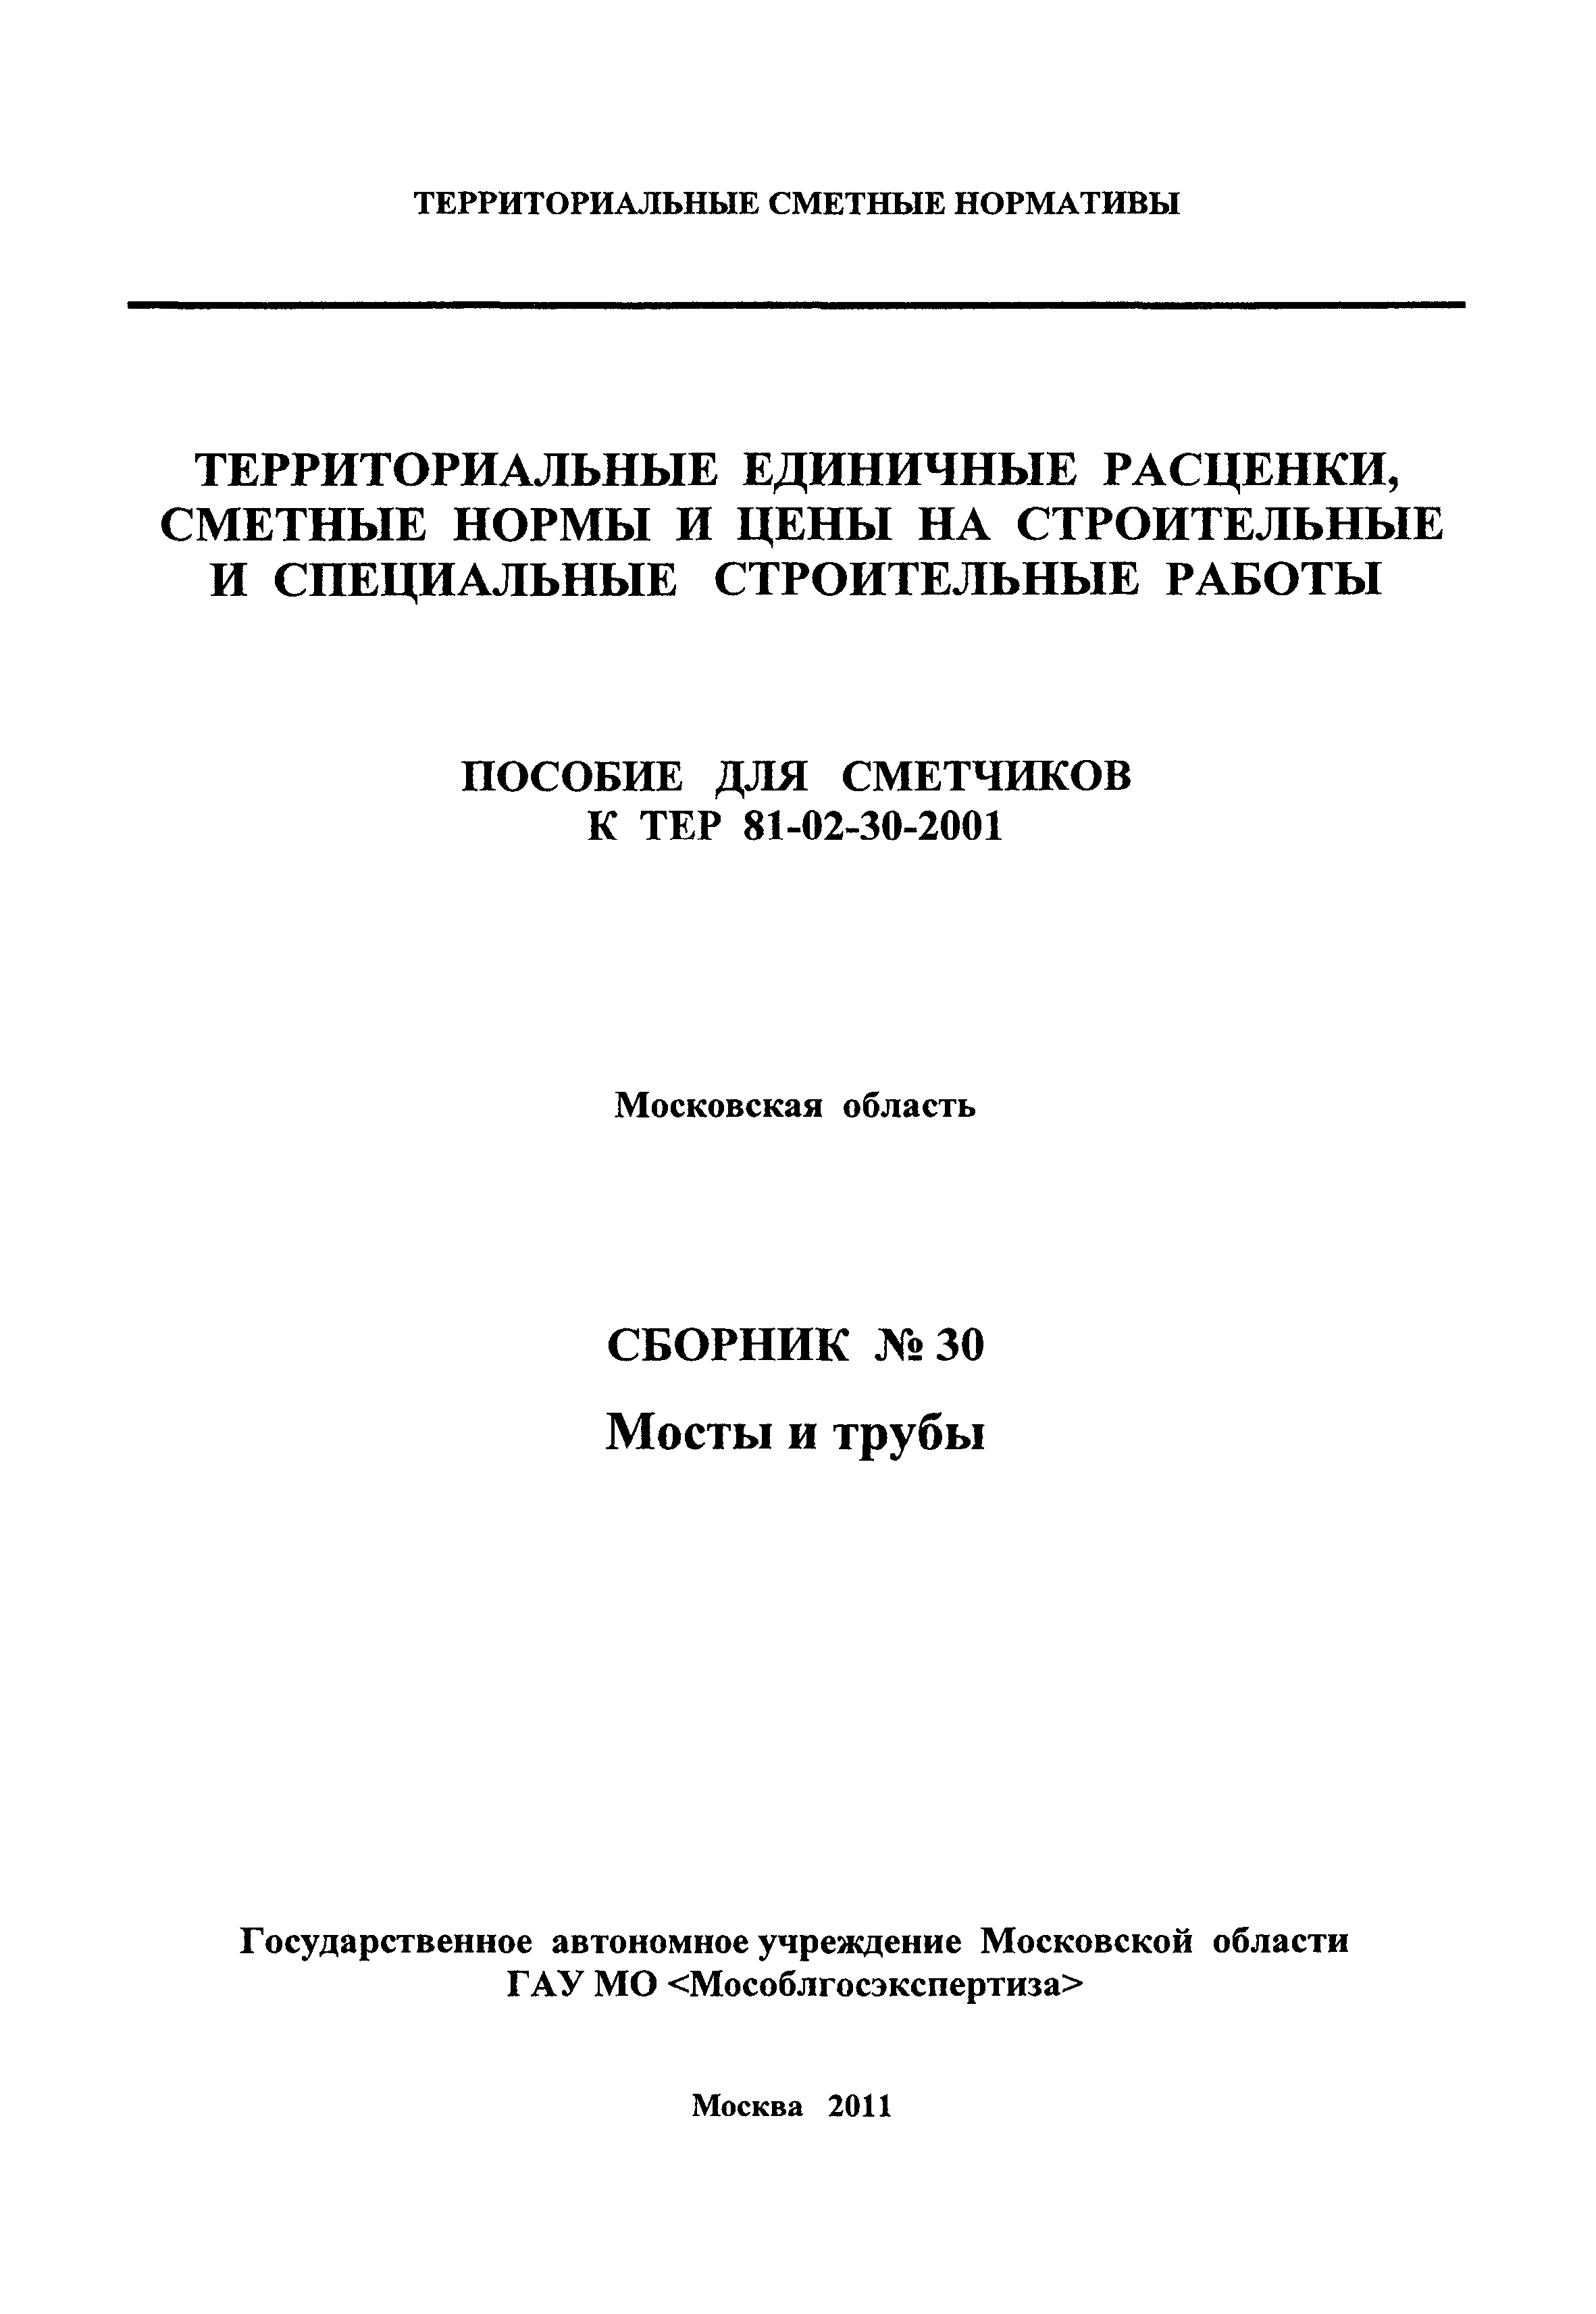 ГЭСНПиТЕР 2001-30 Московской области